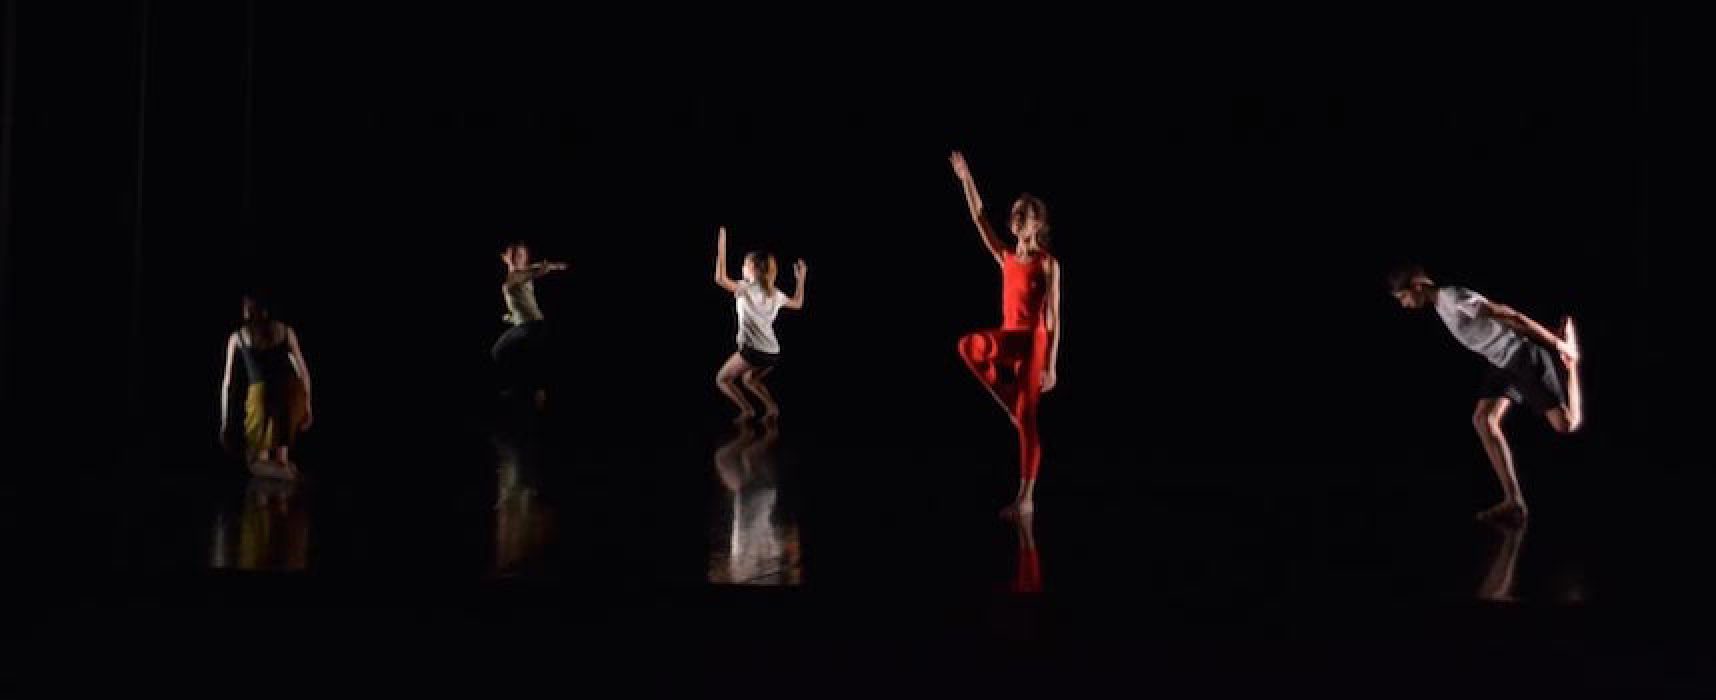 La Compagnia Simona Bertozzi porta il suo “Prometeo” danzante sul palco del Teatro Garibaldi